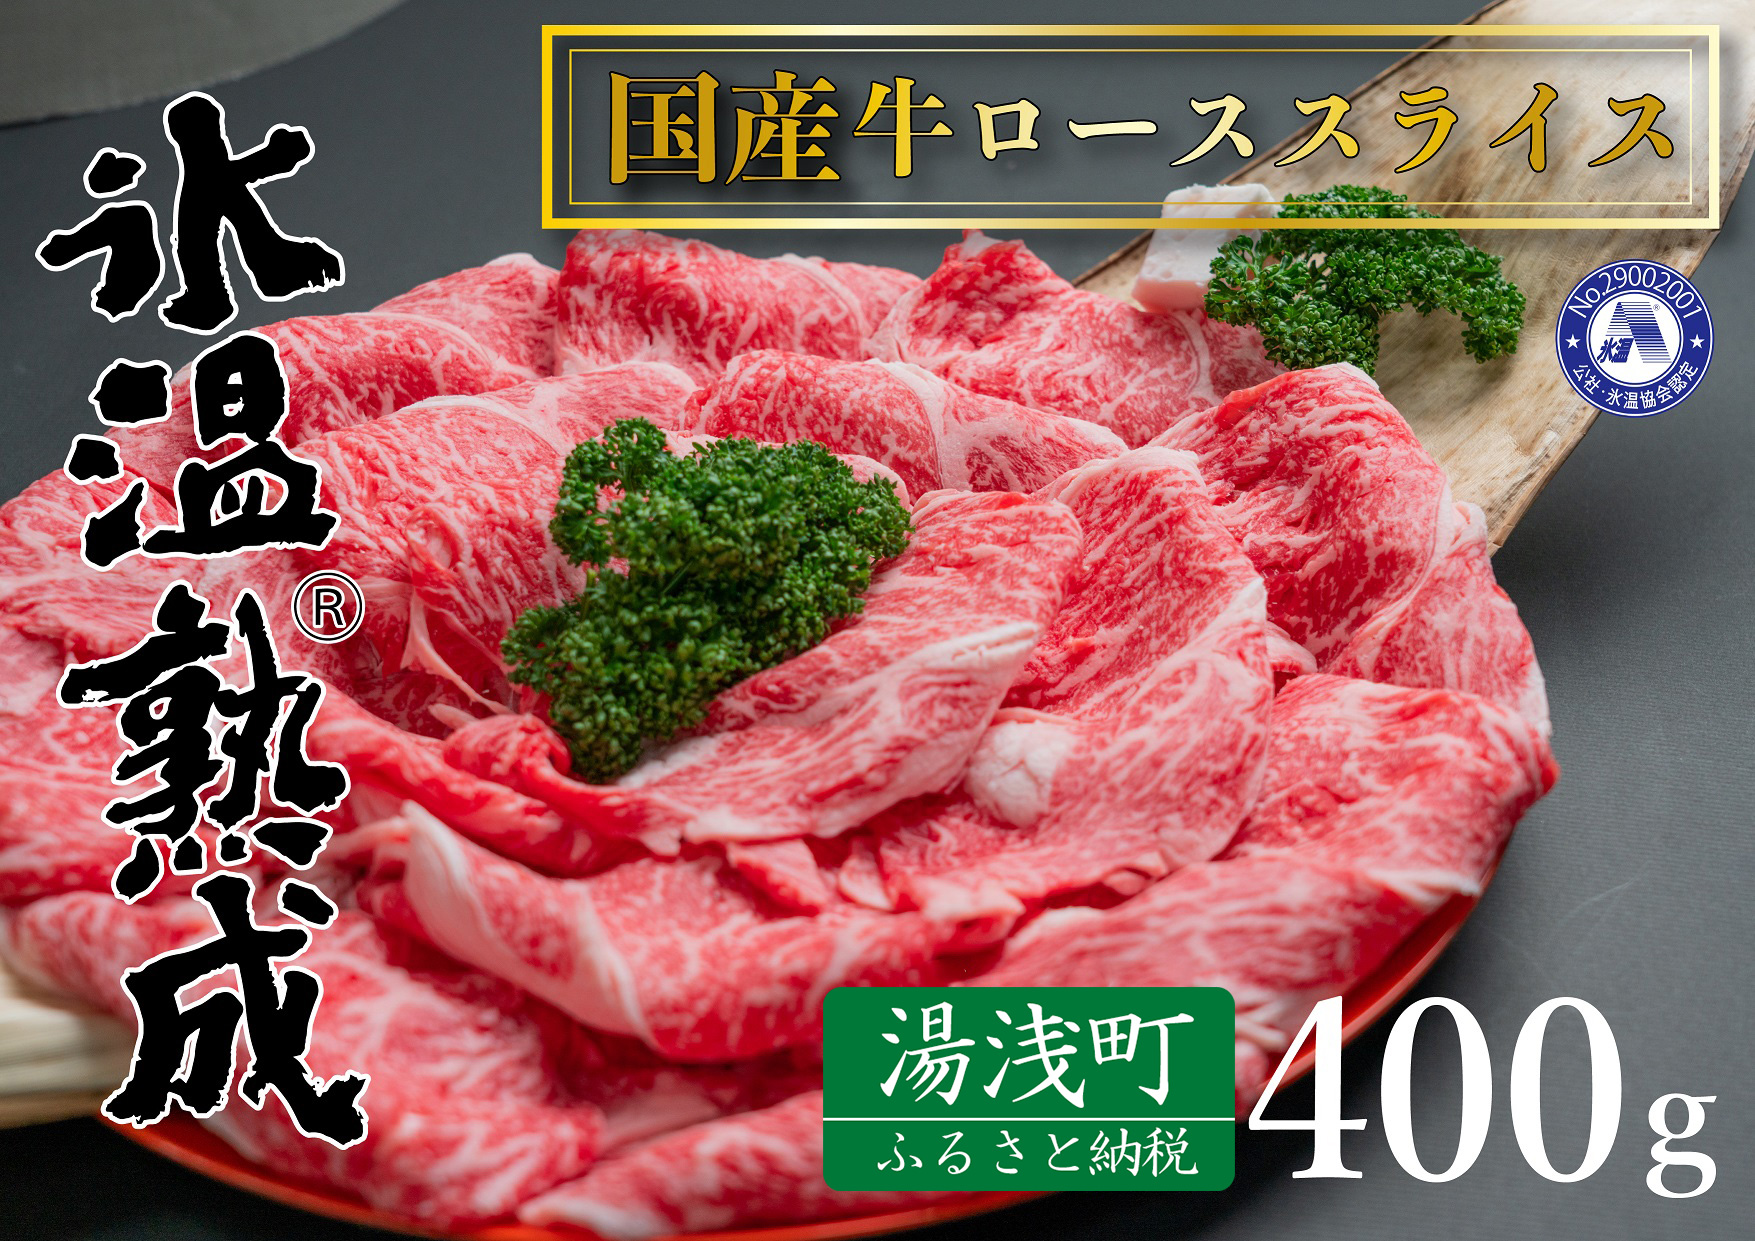 新発売 氷温(R)熟成 国産牛ローススライス肉 400g 精肉・肉加工品